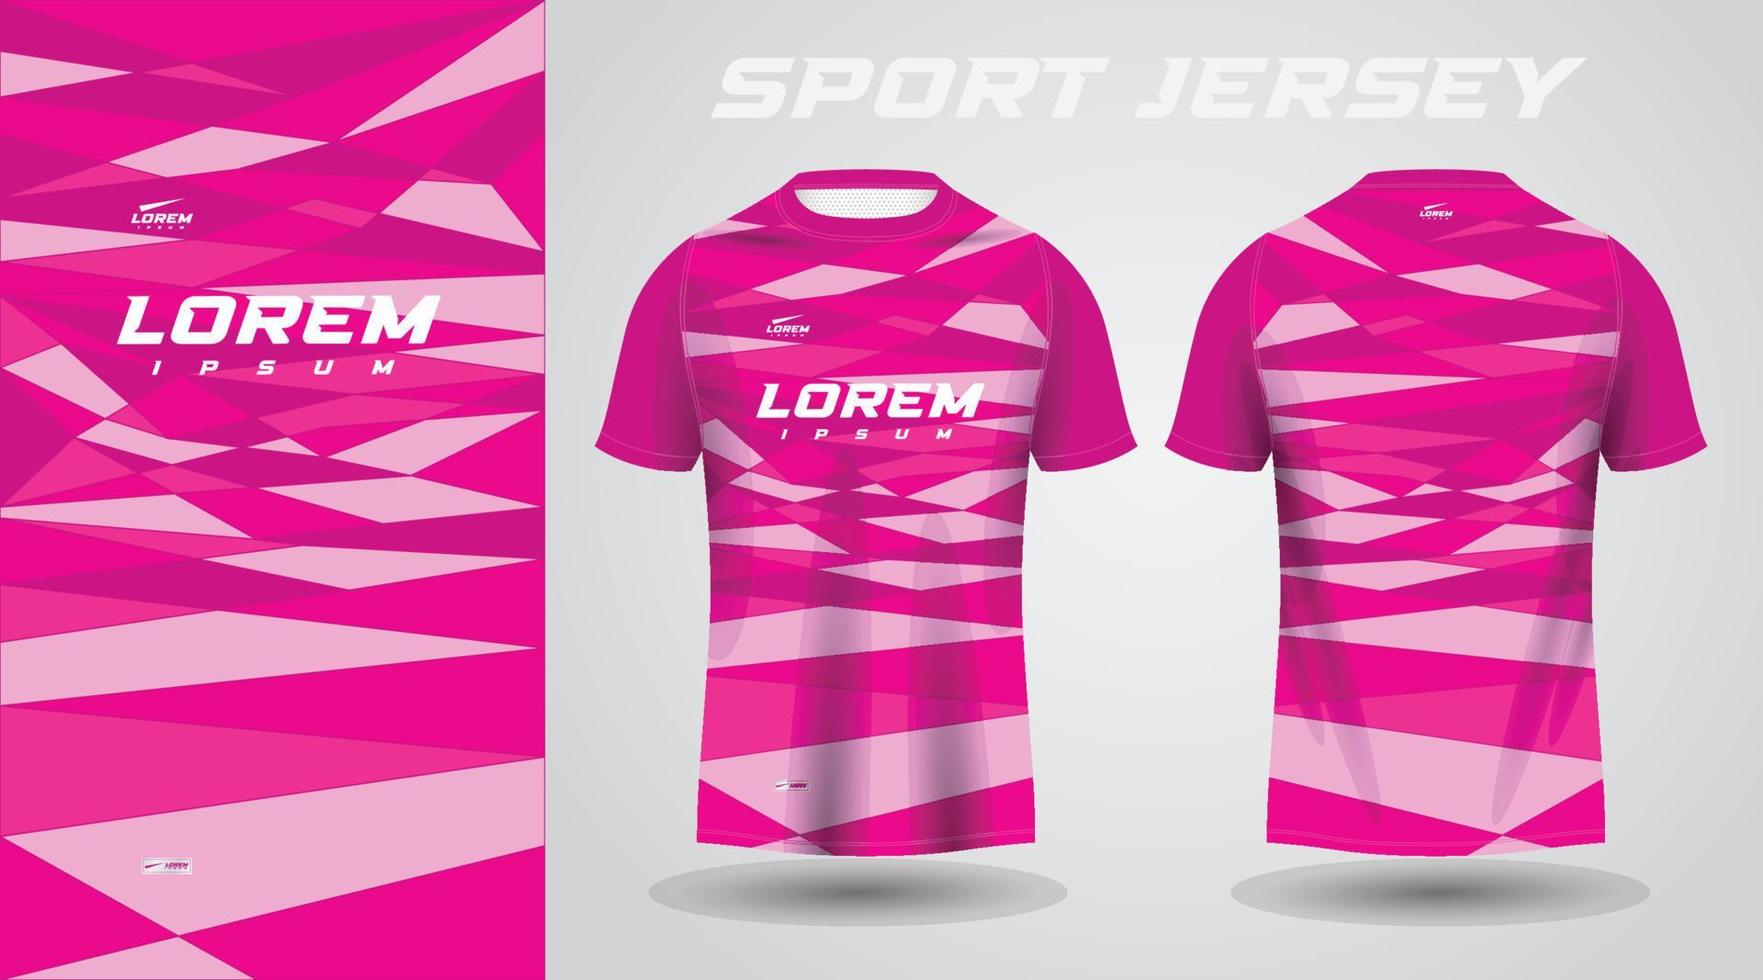 rosa camicia calcio calcio sport maglia modello design modello vettore